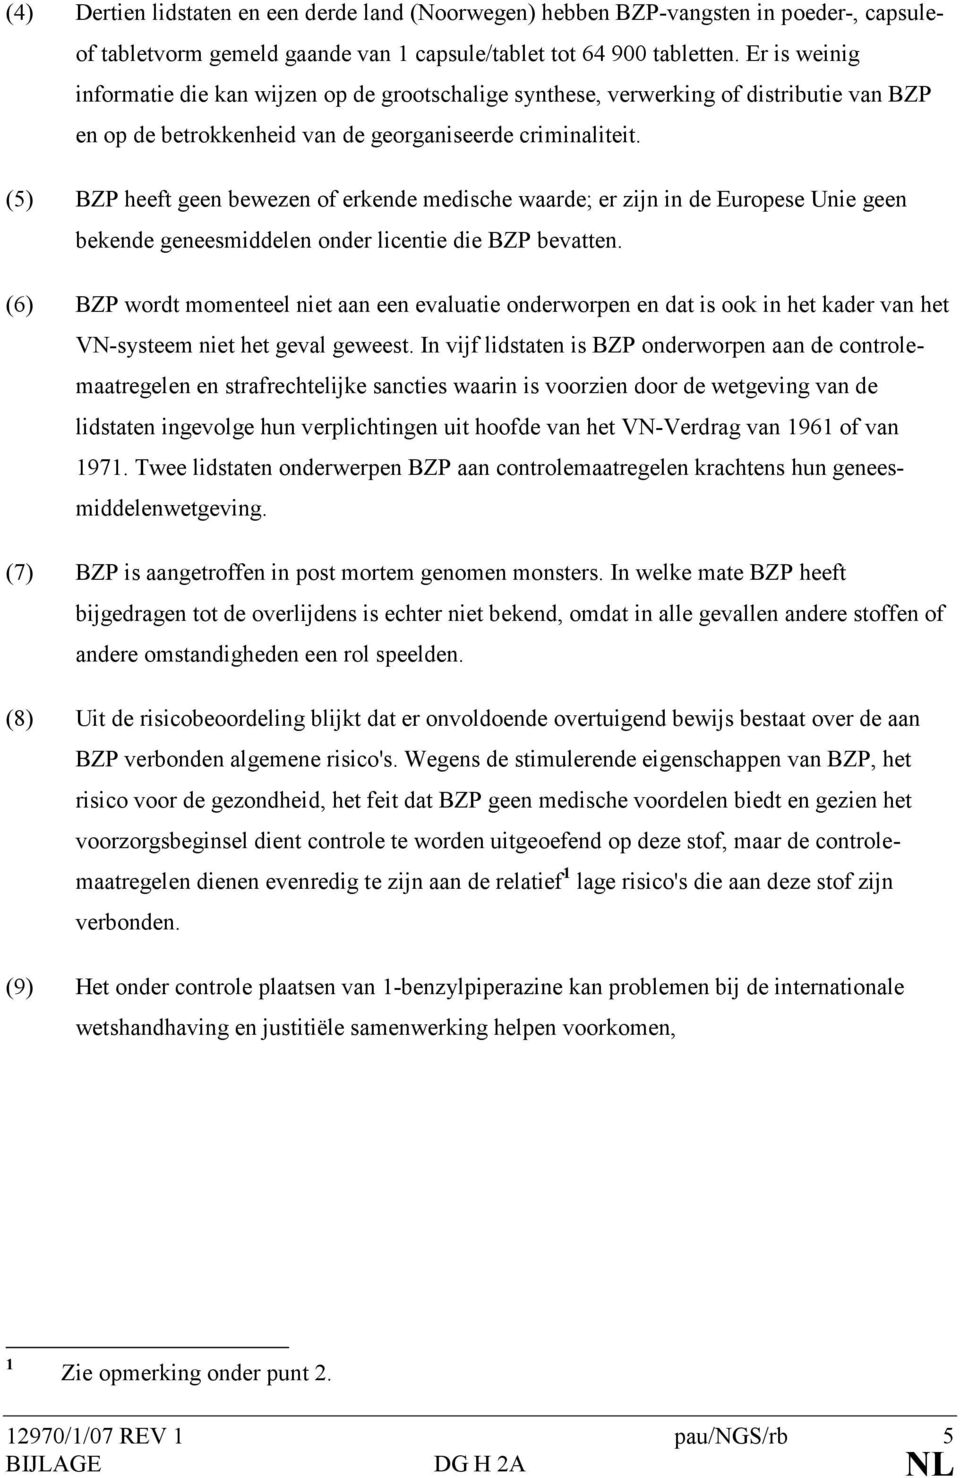 (5) BZP heeft geen bewezen of erkende medische waarde; er zijn in de Europese Unie geen bekende geneesmiddelen onder licentie die BZP bevatten.